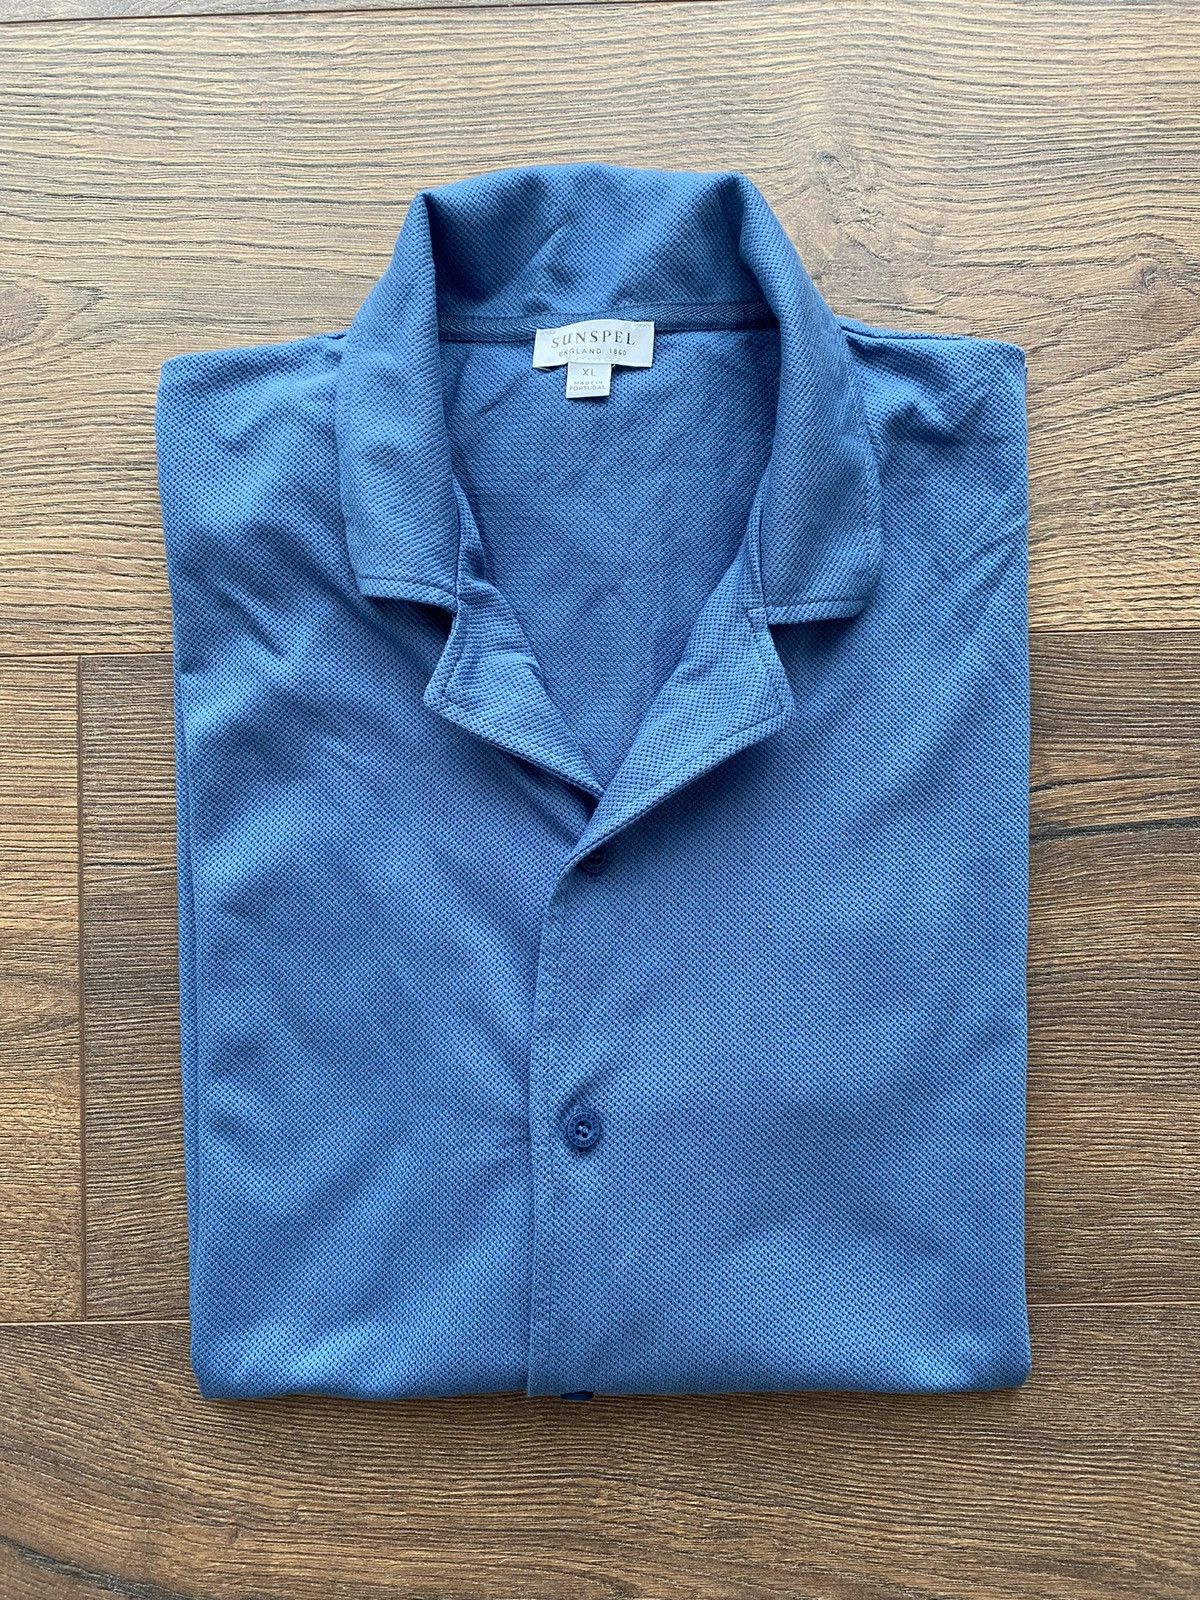 Sunspel Sunspel Riviera Camp-Collar Shirt - Size XL | Grailed